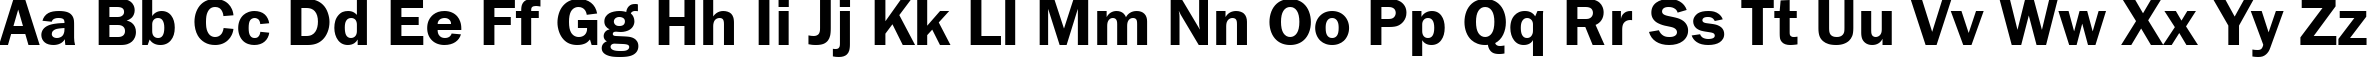 Пример написания английского алфавита шрифтом FranklinGothDemiCTT